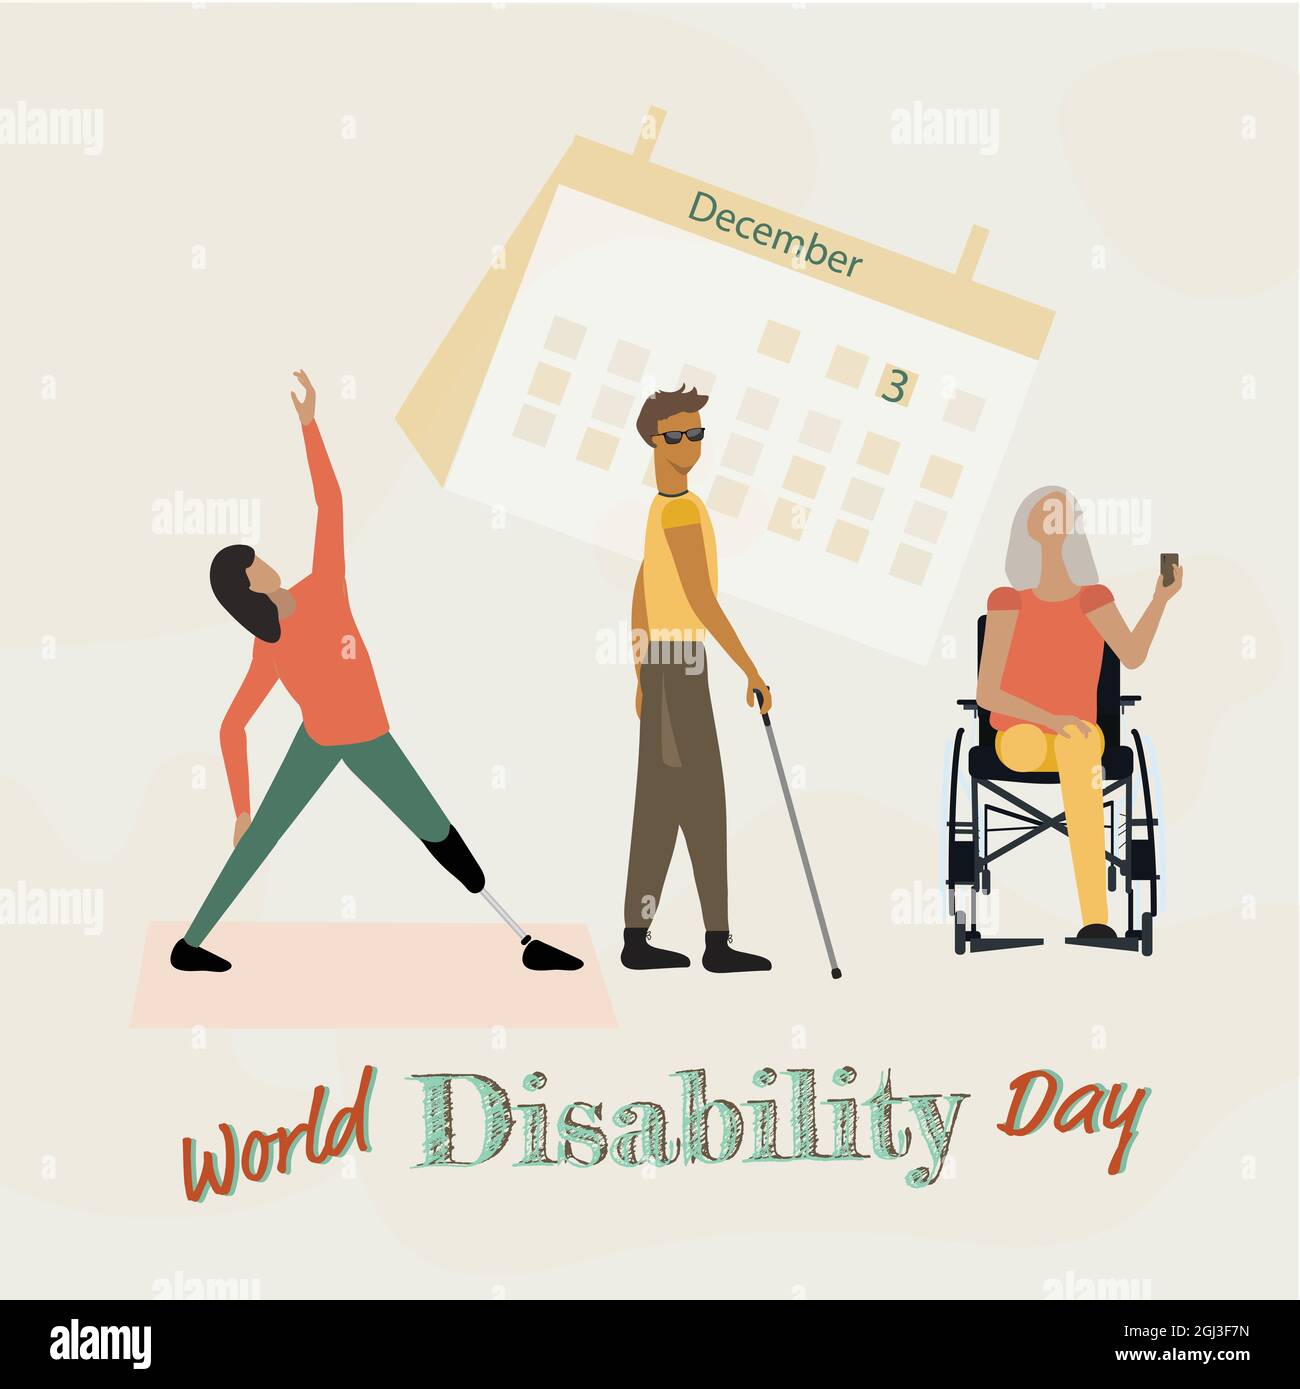 Décembre 3. Feuille de calendrier et personnes handicapées, Journée internationale des personnes handicapées. Illustration vectorielle. Banque D'Images